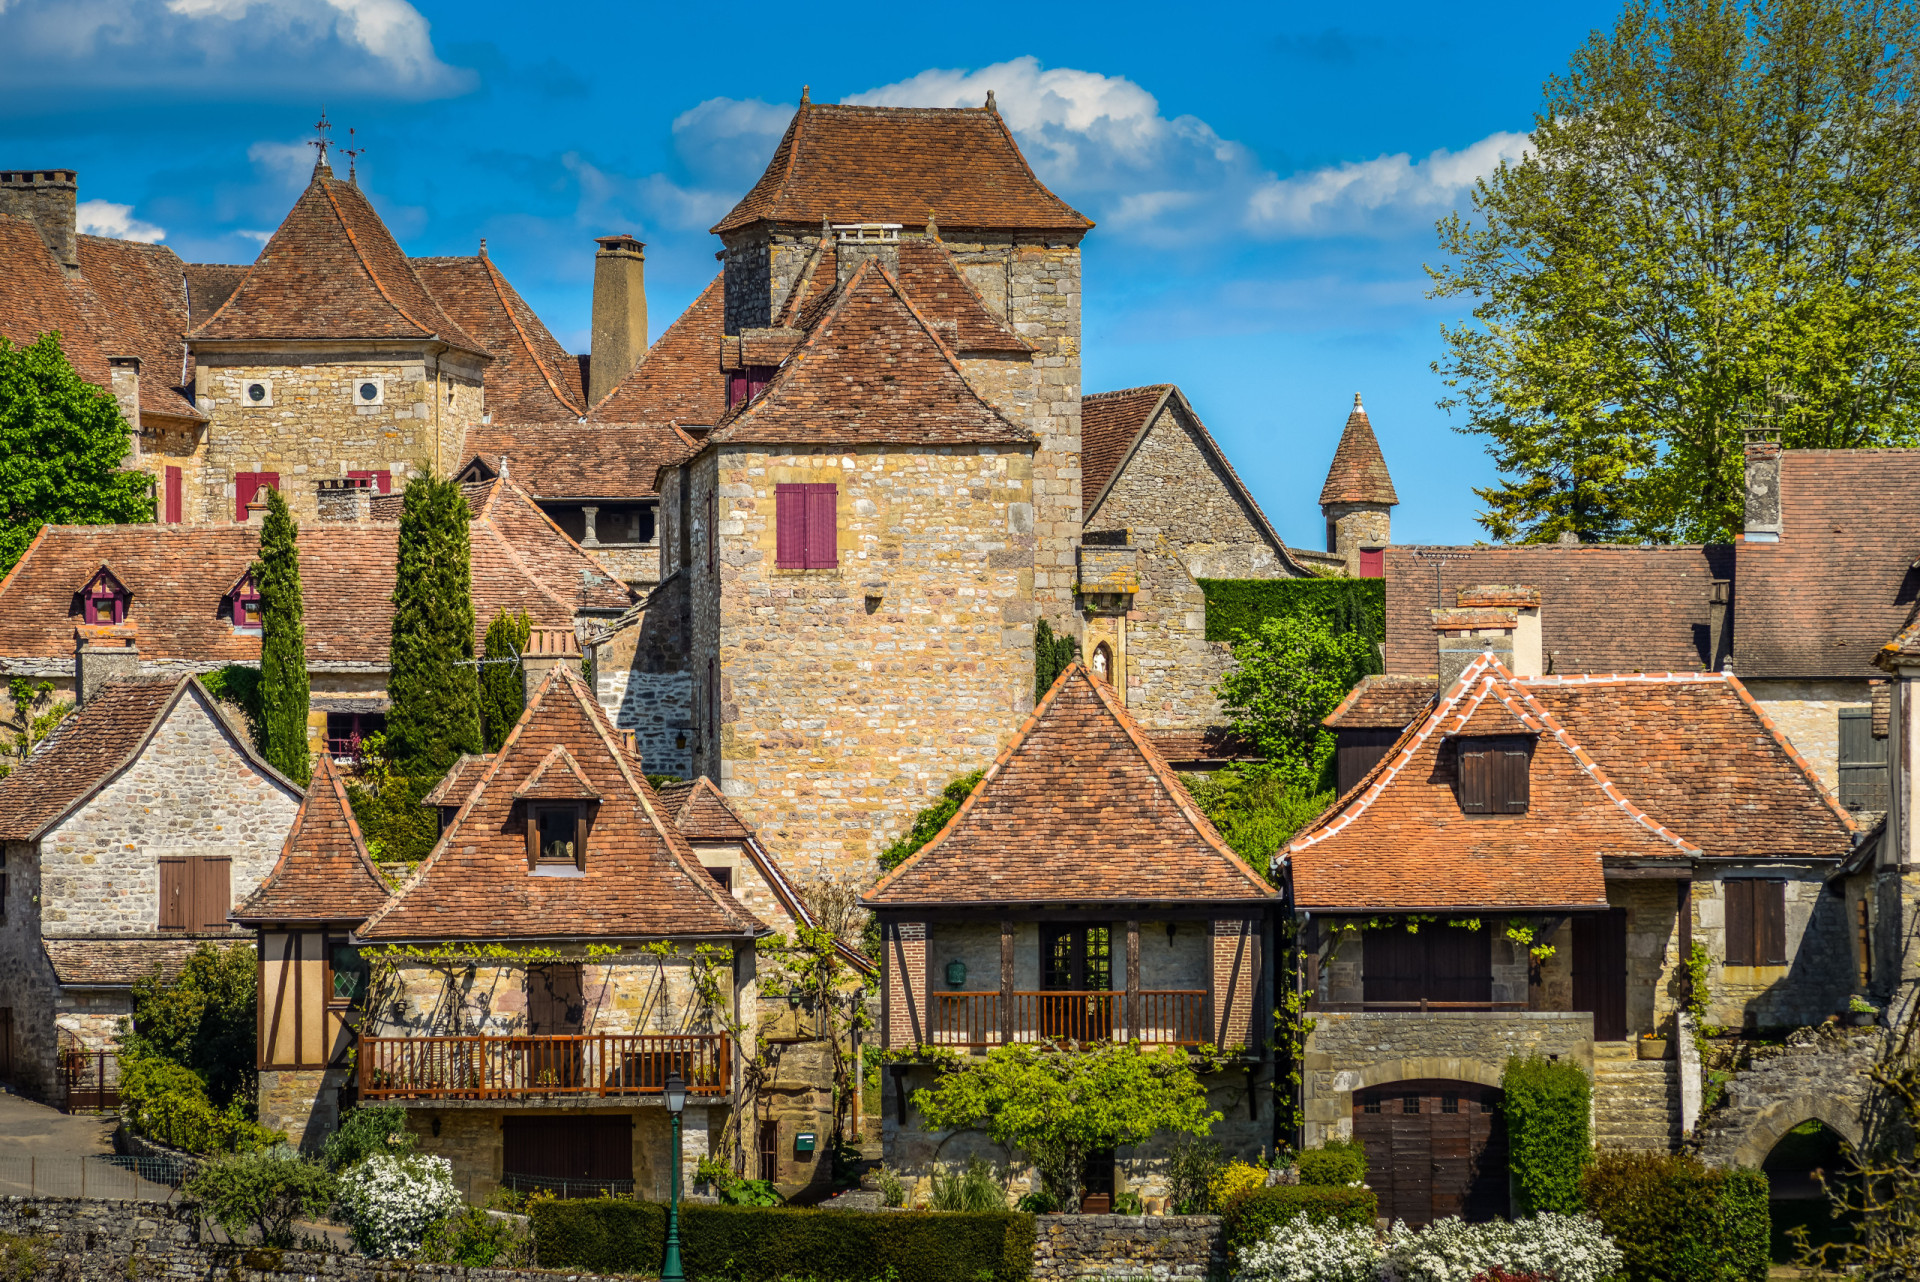 <p>Régulièrement cité comme l'un des plus beaux villages de France, le village médiéval de Loubressac, dans la vallée de la Dordogne, est tout construit en pierre ocre et coiffé de toits en tuiles de châtaignier. Il est situé sur un affleurement rocheux et offre une vue imprenable sur la campagne.</p><p><a href="https://www.msn.com/fr-fr/community/channel/vid-7xx8mnucu55yw63we9va2gwr7uihbxwc68fxqp25x6tg4ftibpra?cvid=94631541bc0f4f89bfd59158d696ad7e">Suivez-nous et accédez tous les jours à du contenu exclusif</a></p>